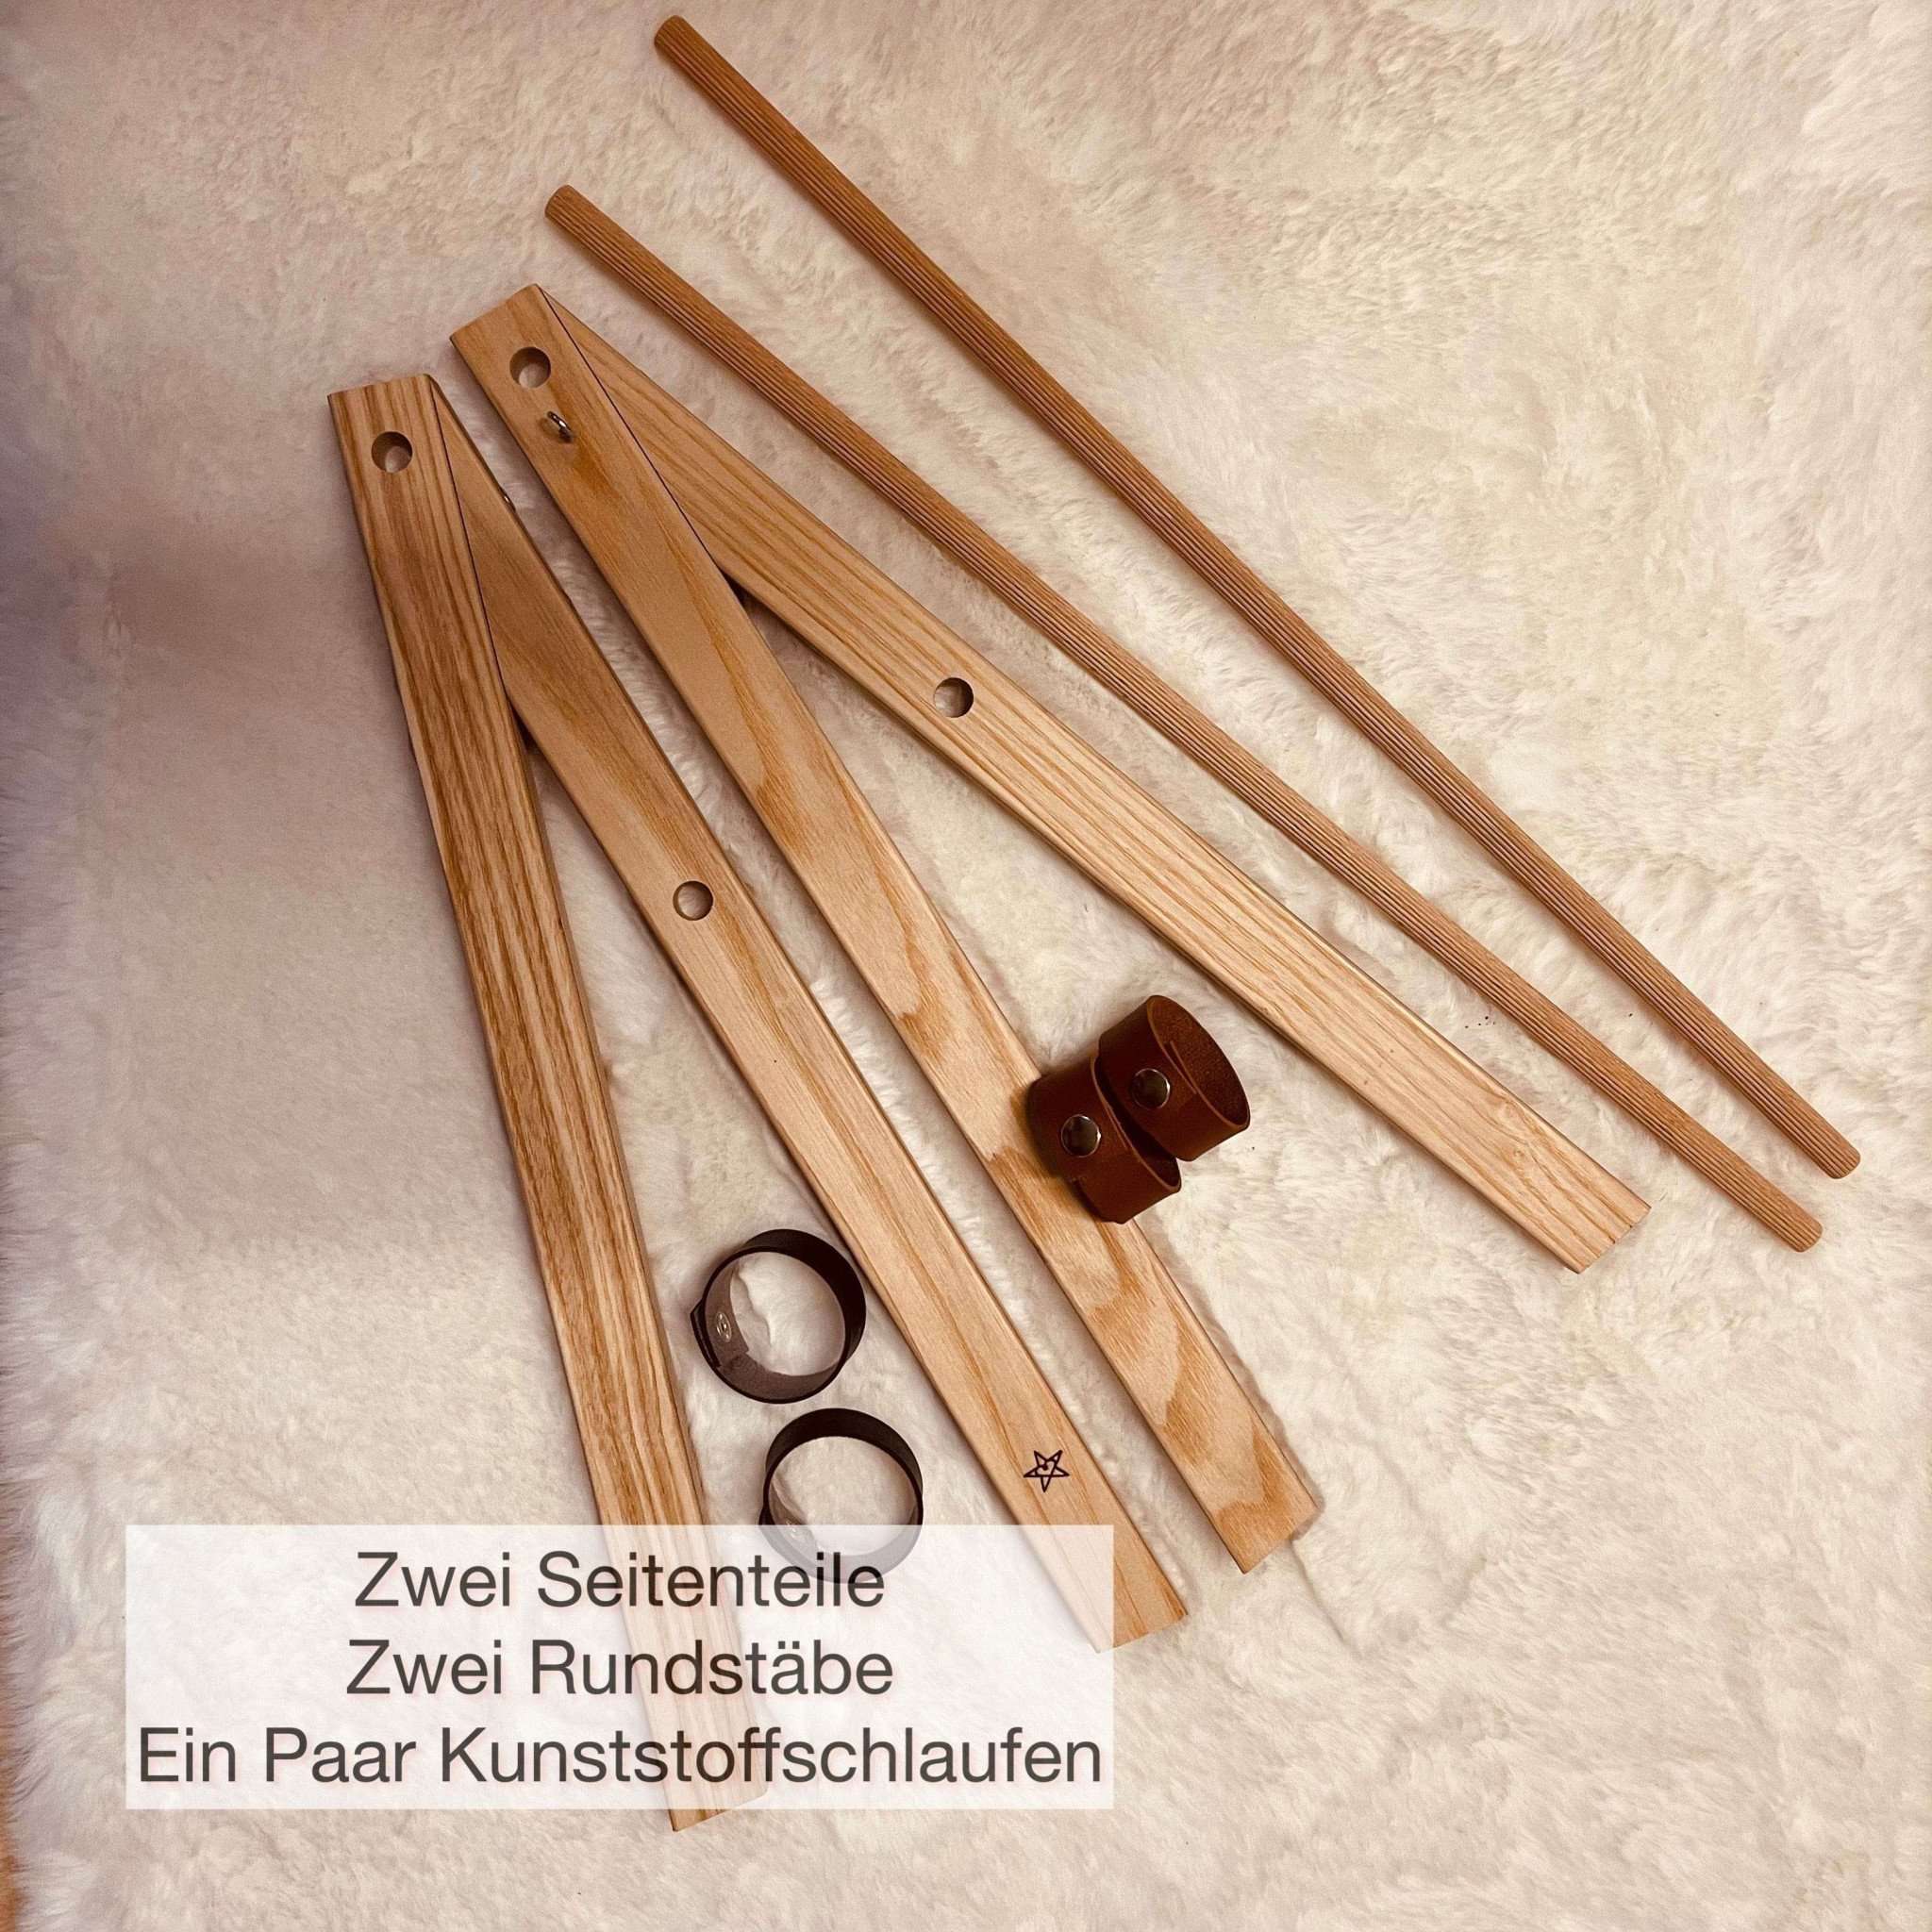 brightstars Knüpfständer Kleiner MAKRAMEE Tisch Knüpfständer in den Holzarten Esche (hell) und Akazie (dunkel)